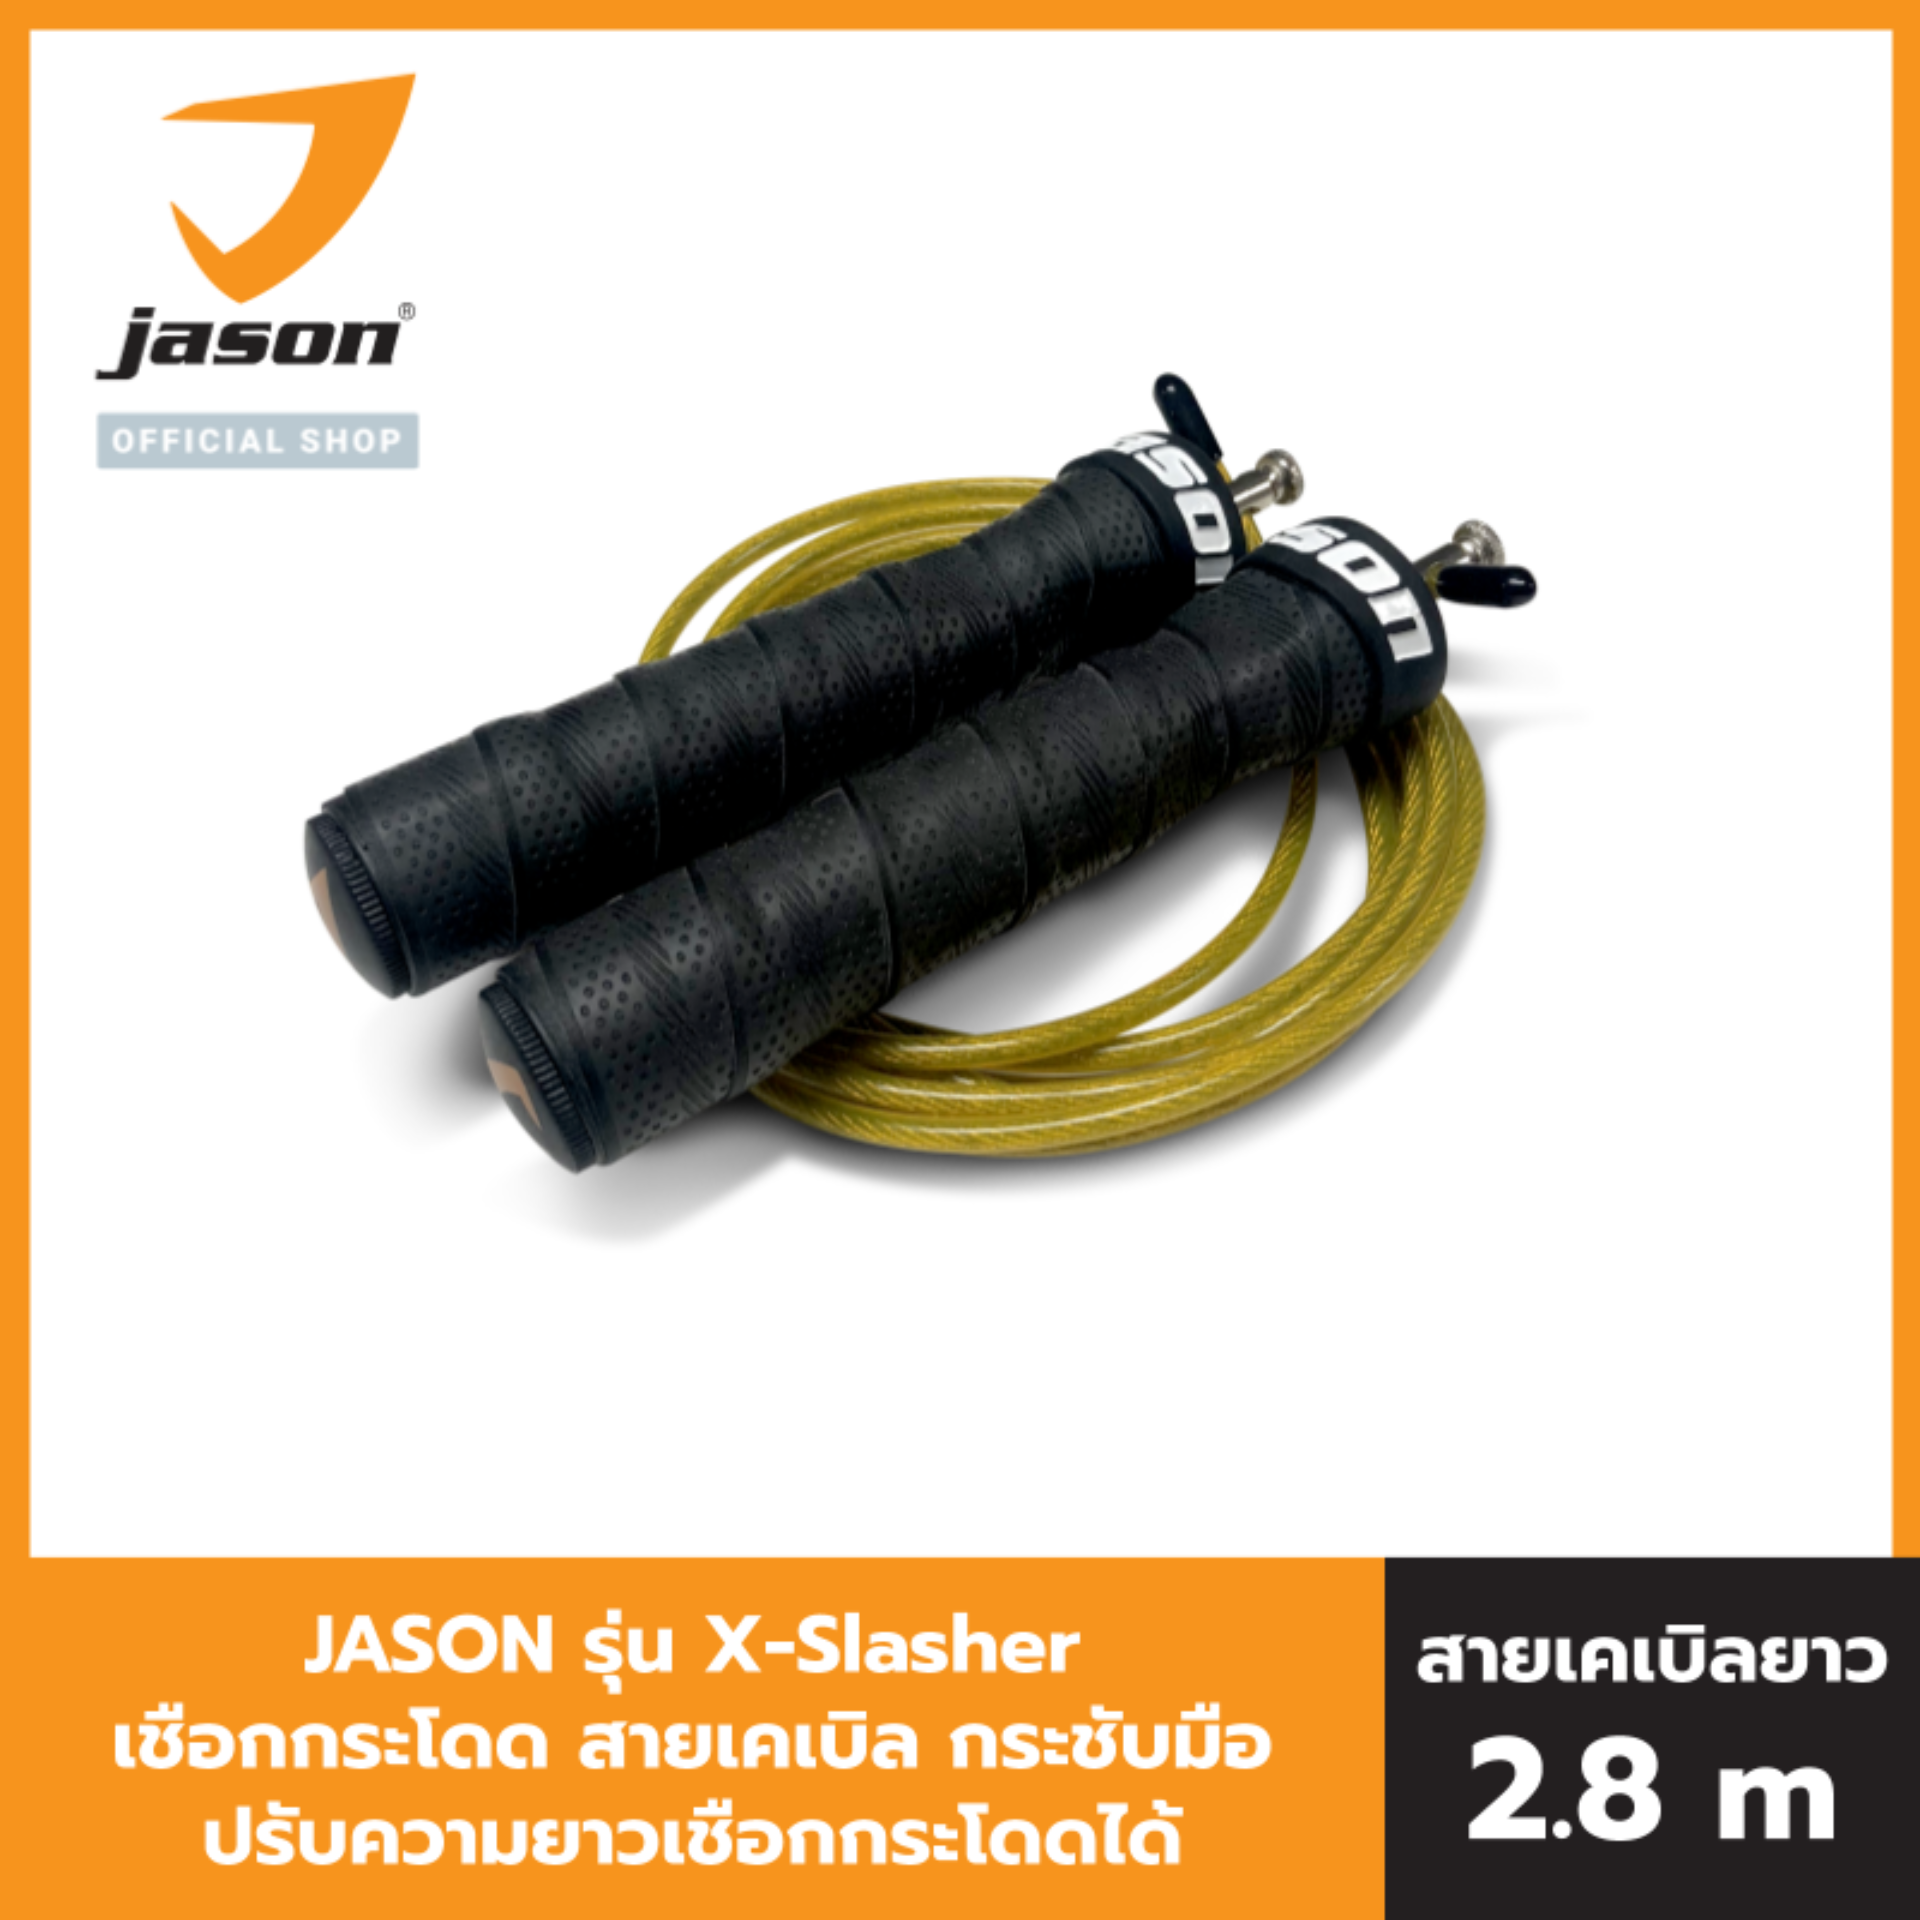 JASON เจสัน เชือกกระโดด สายเคเบิล รุ่น X-Slasher V.2 ปรับความยาวเชือกกระโดดได้ รุ่น JS0562